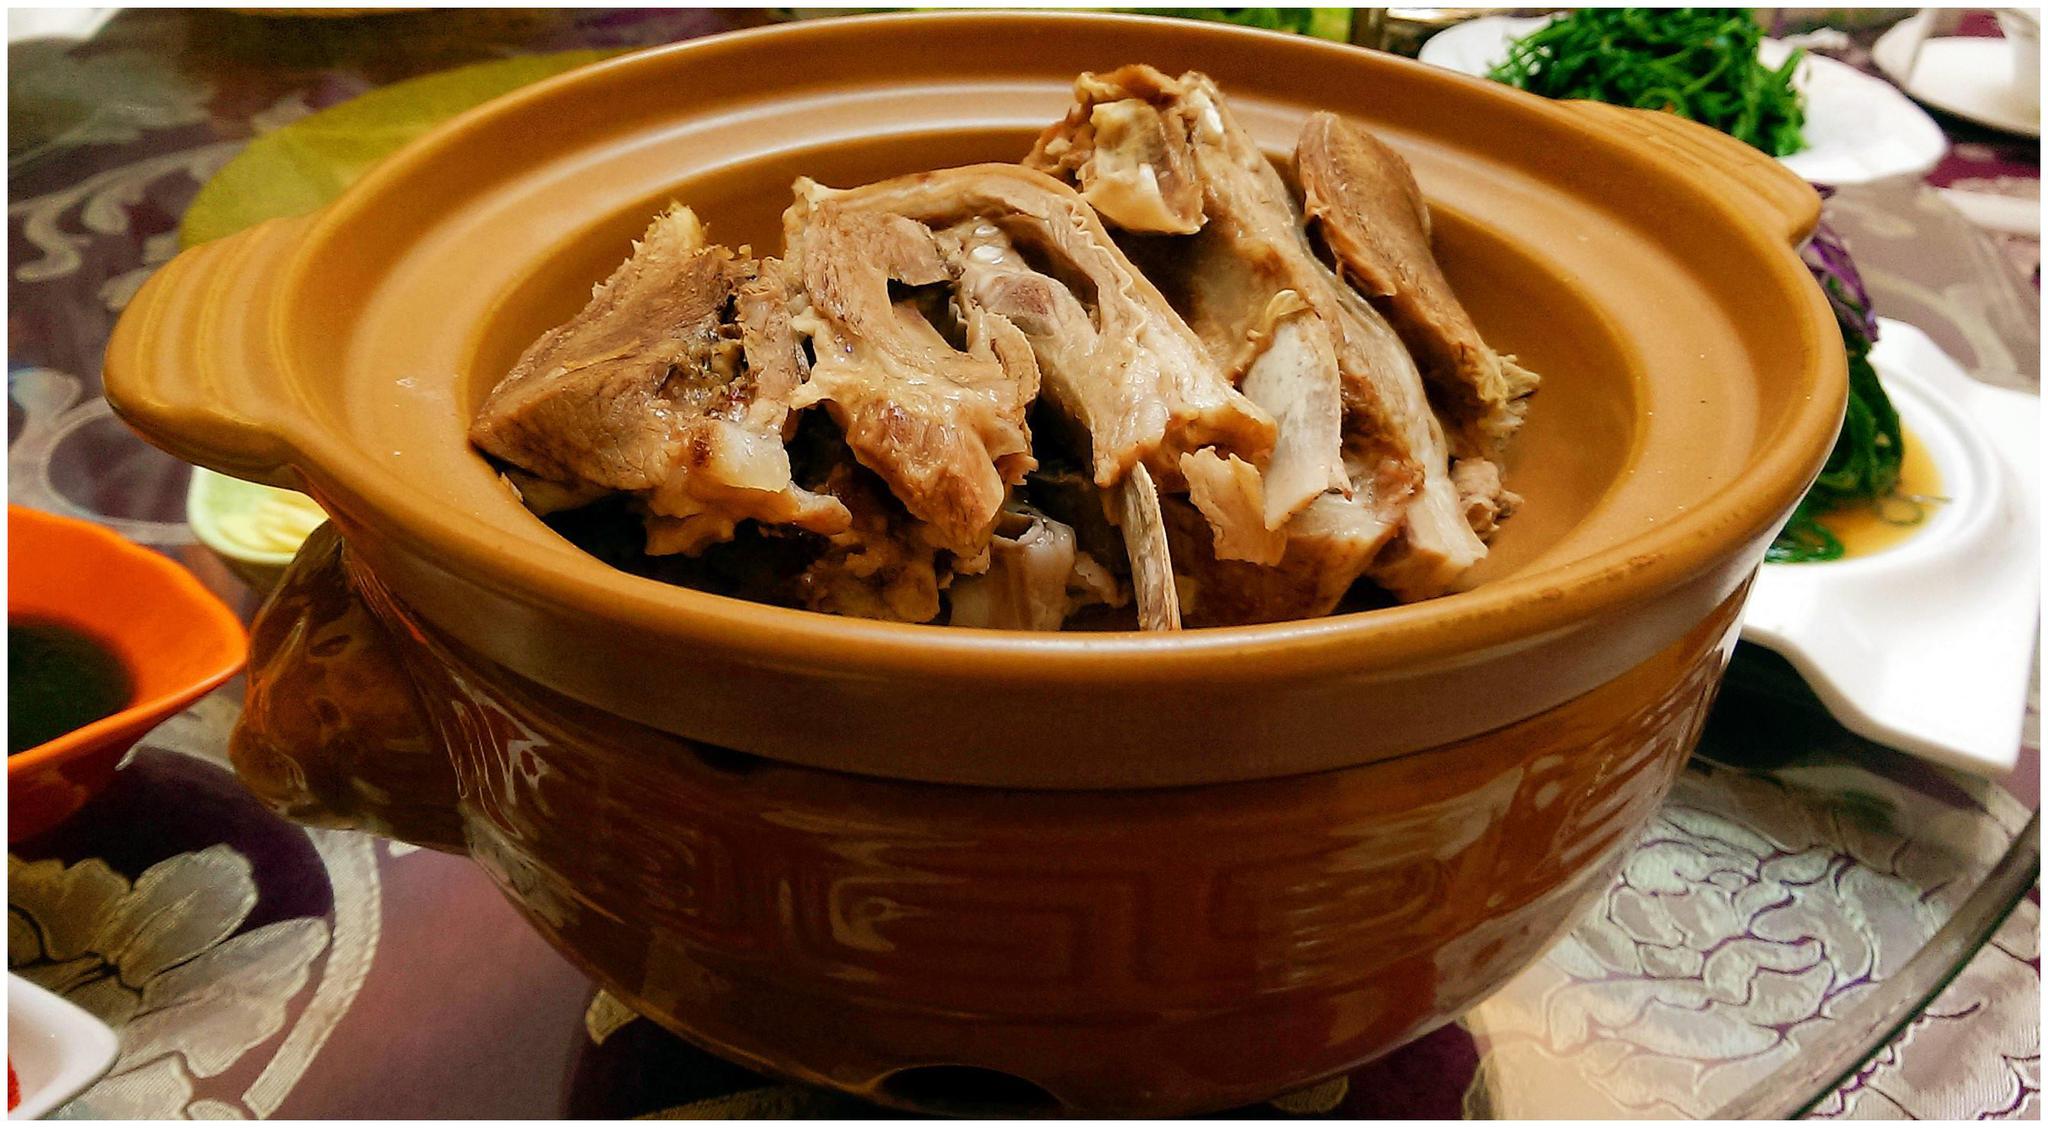 爆炒羊羔肉 永远是宁夏人心尖上的一道菜。